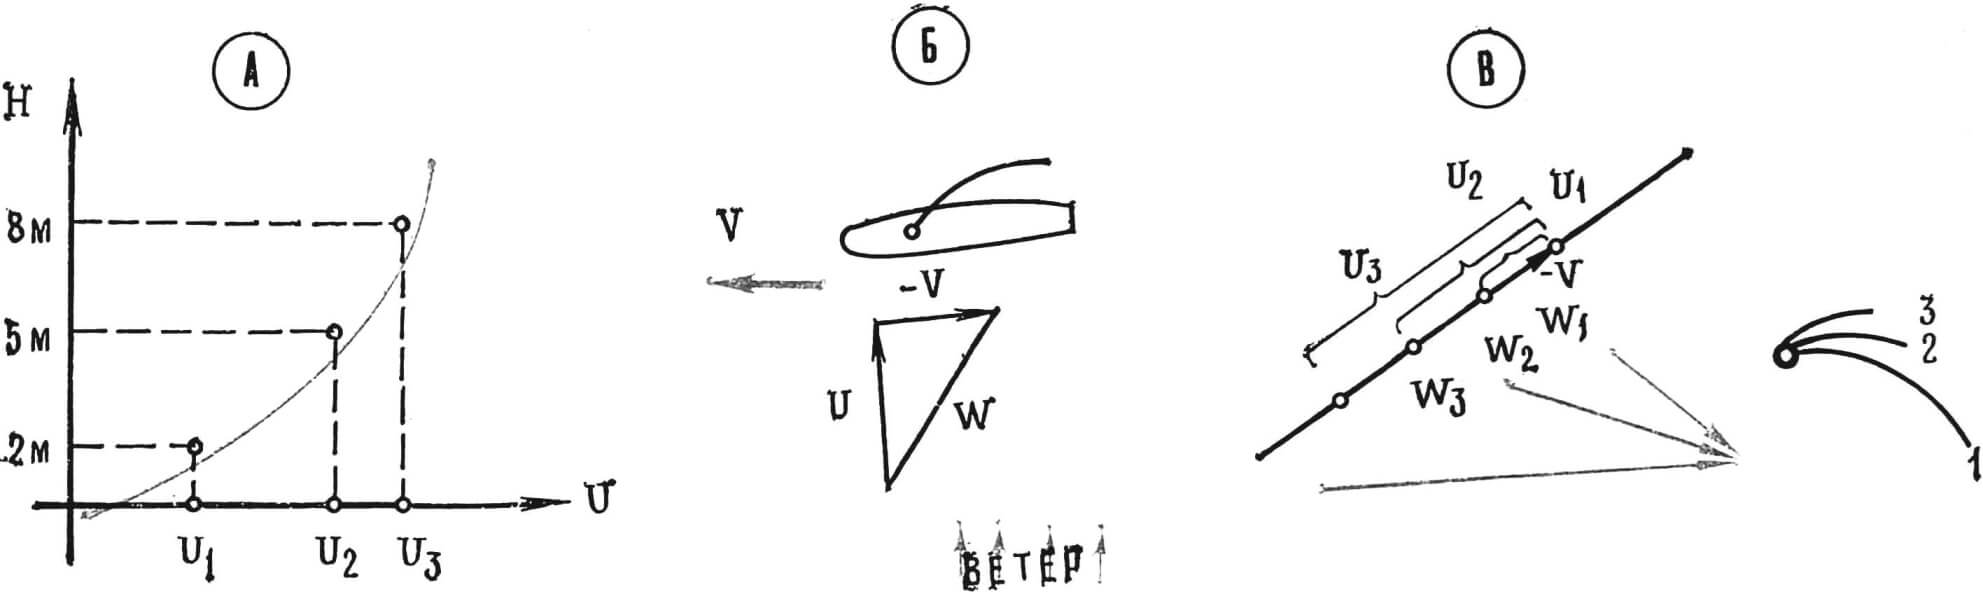 Рис. 1: А — зависимость скорости ветра от высоты над поверхностью; Б — схема образования вымпельного ветра; В — условная крутка паруса виндсерфера.